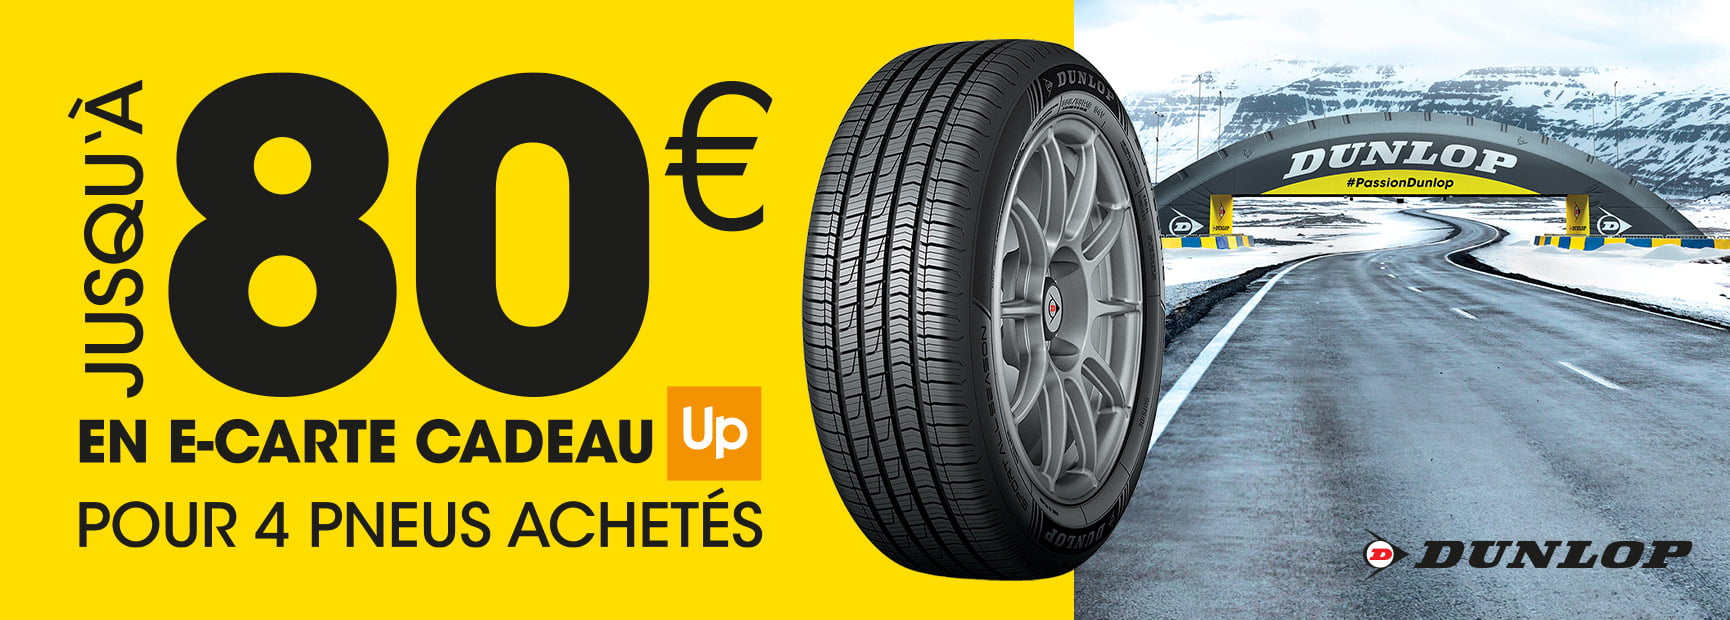 Jusqu'à 80 euros en carte cadeau Up pour 4 pneus Dunlop achetés